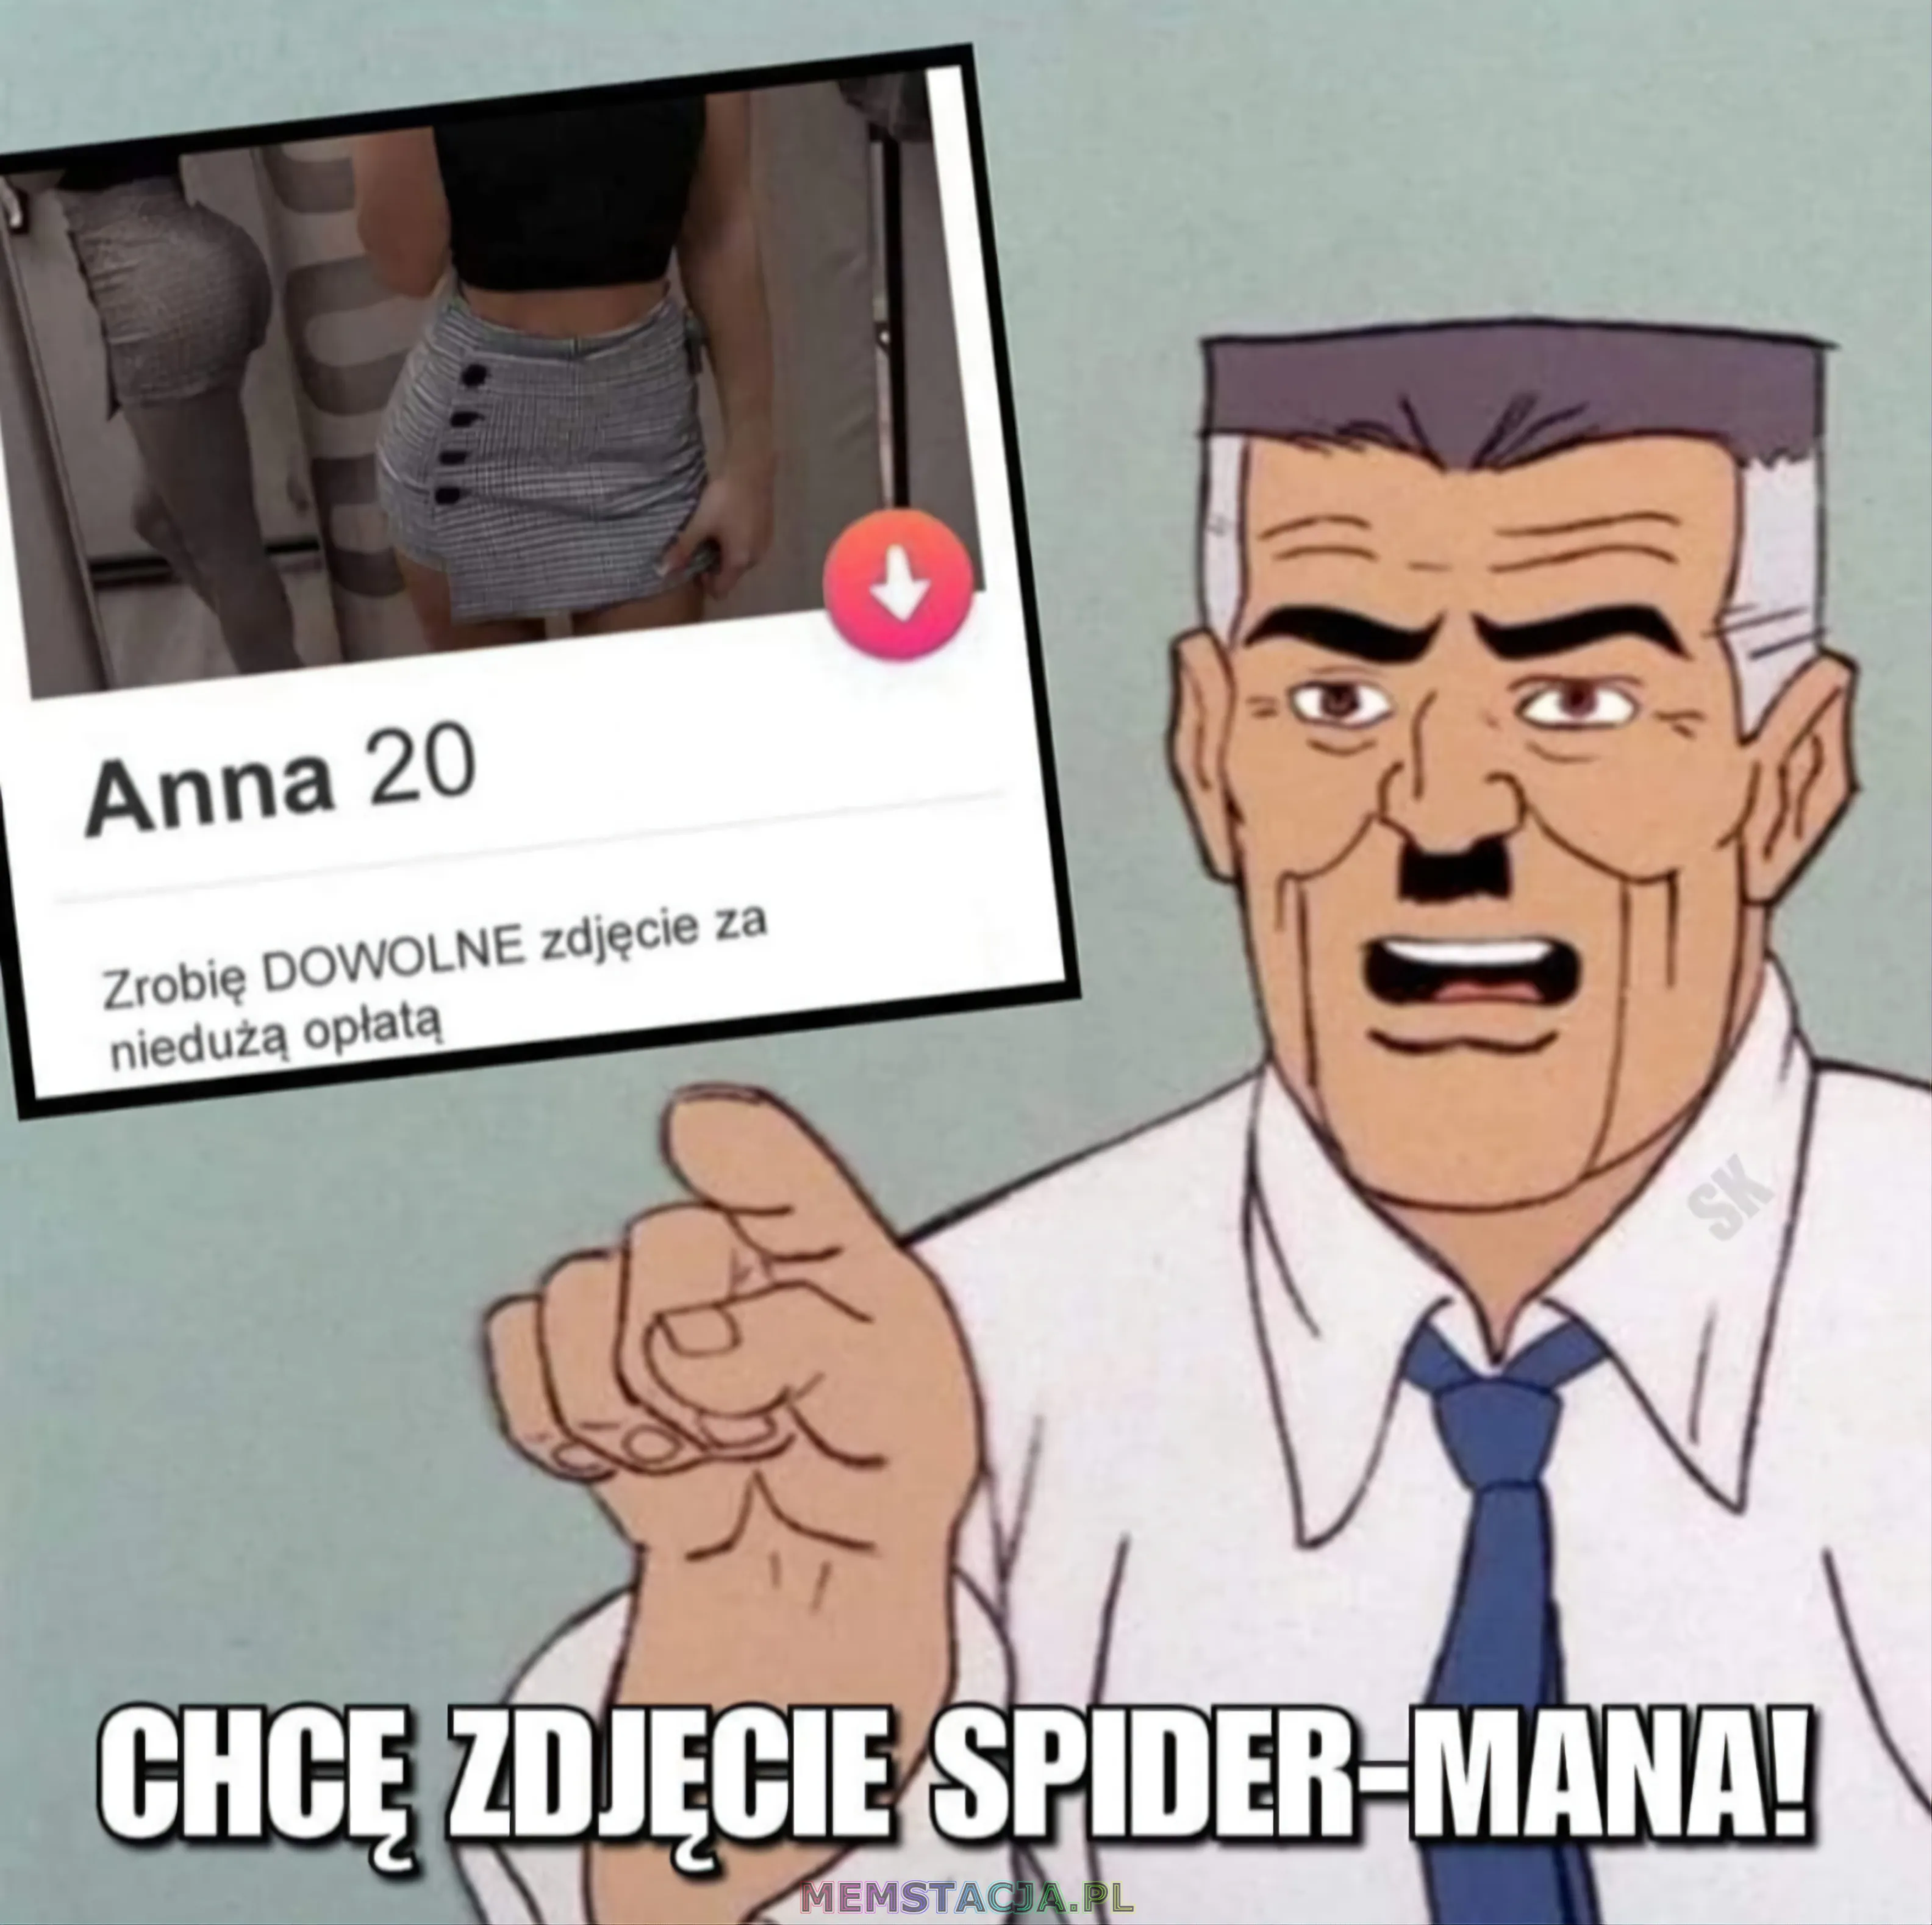 Mem przedstawiający ogłoszenie i mężczyzne: 'Anna 20 lat: Zdrobię dowolne zdjęcie za niedużą opłatą; On: Chcę zdjęcie Spider-MANA!'